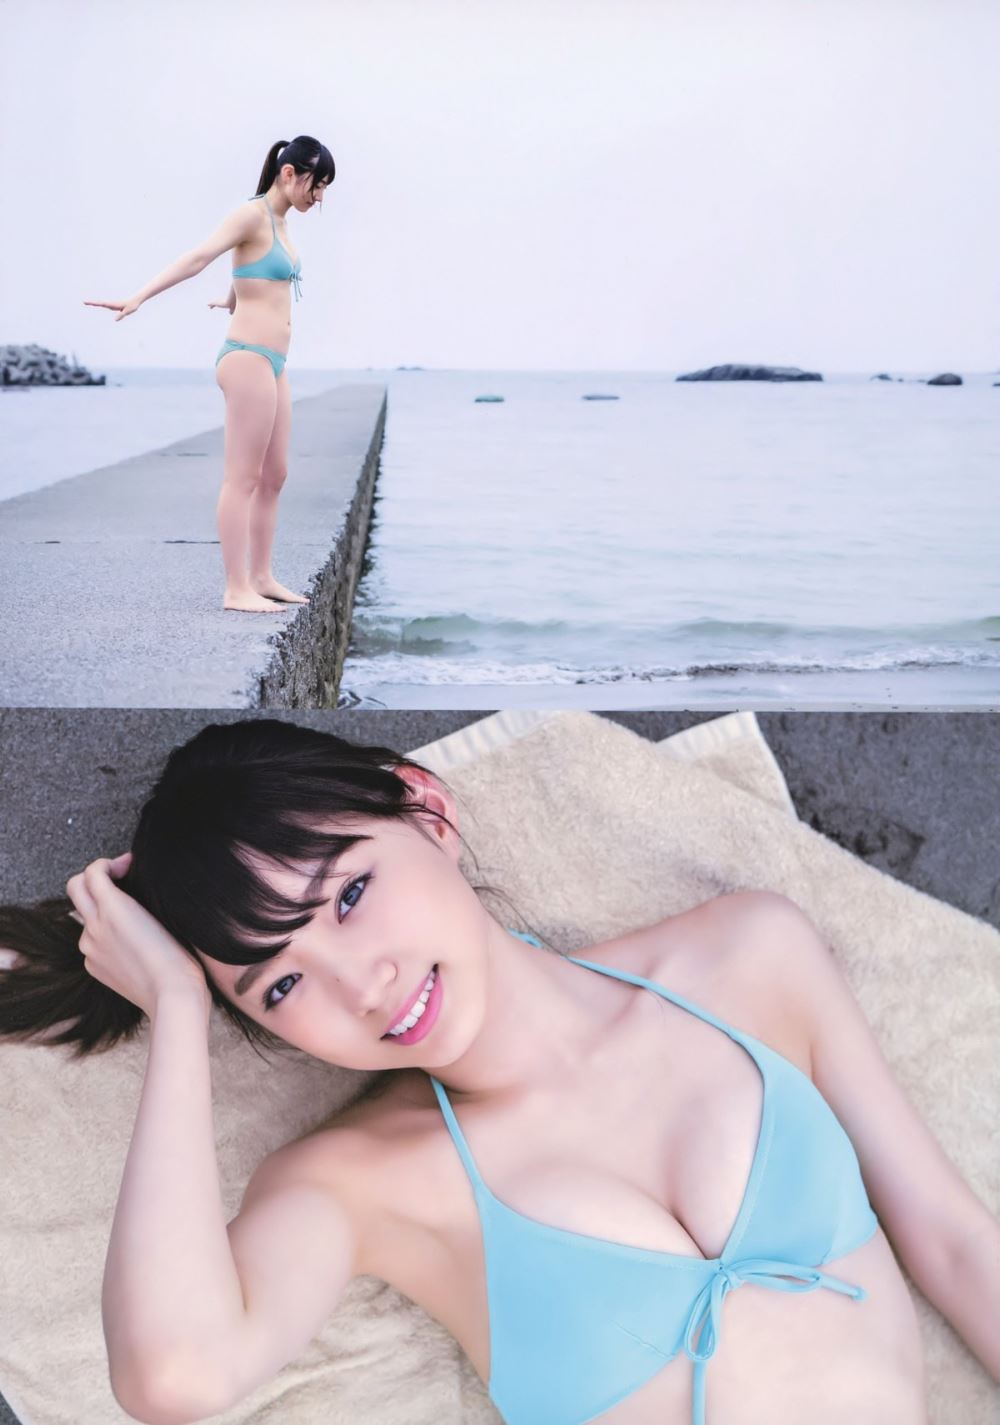 太田夢莉 1万年に1人 可愛い アイドル 水着 画像 23